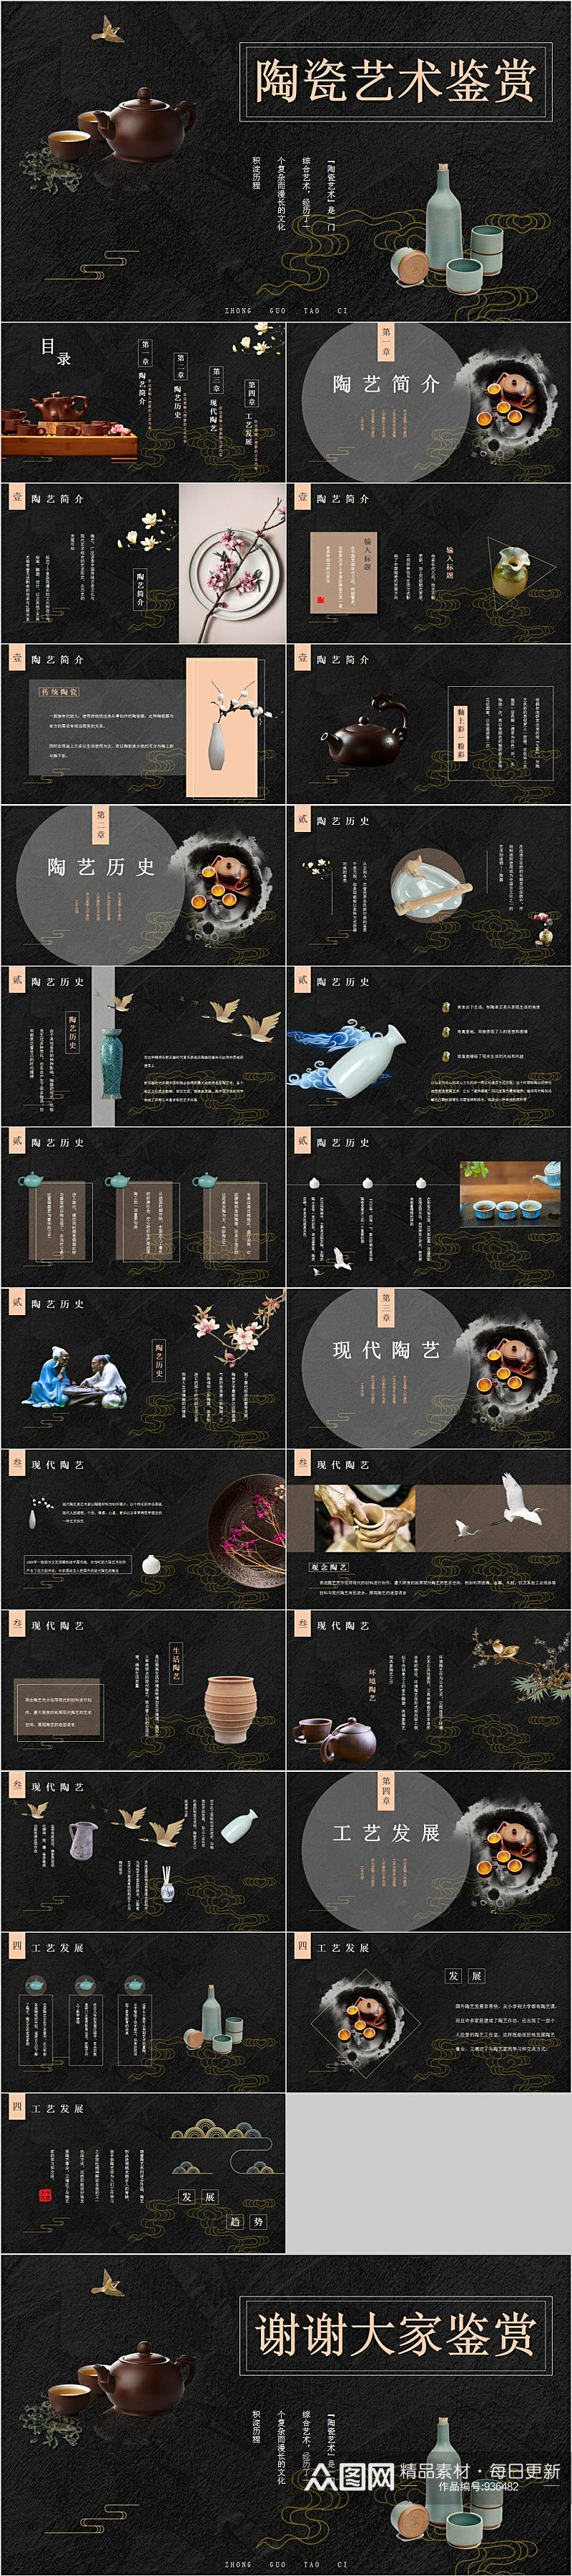 古典中式陶瓷艺术鉴赏PPT模板素材